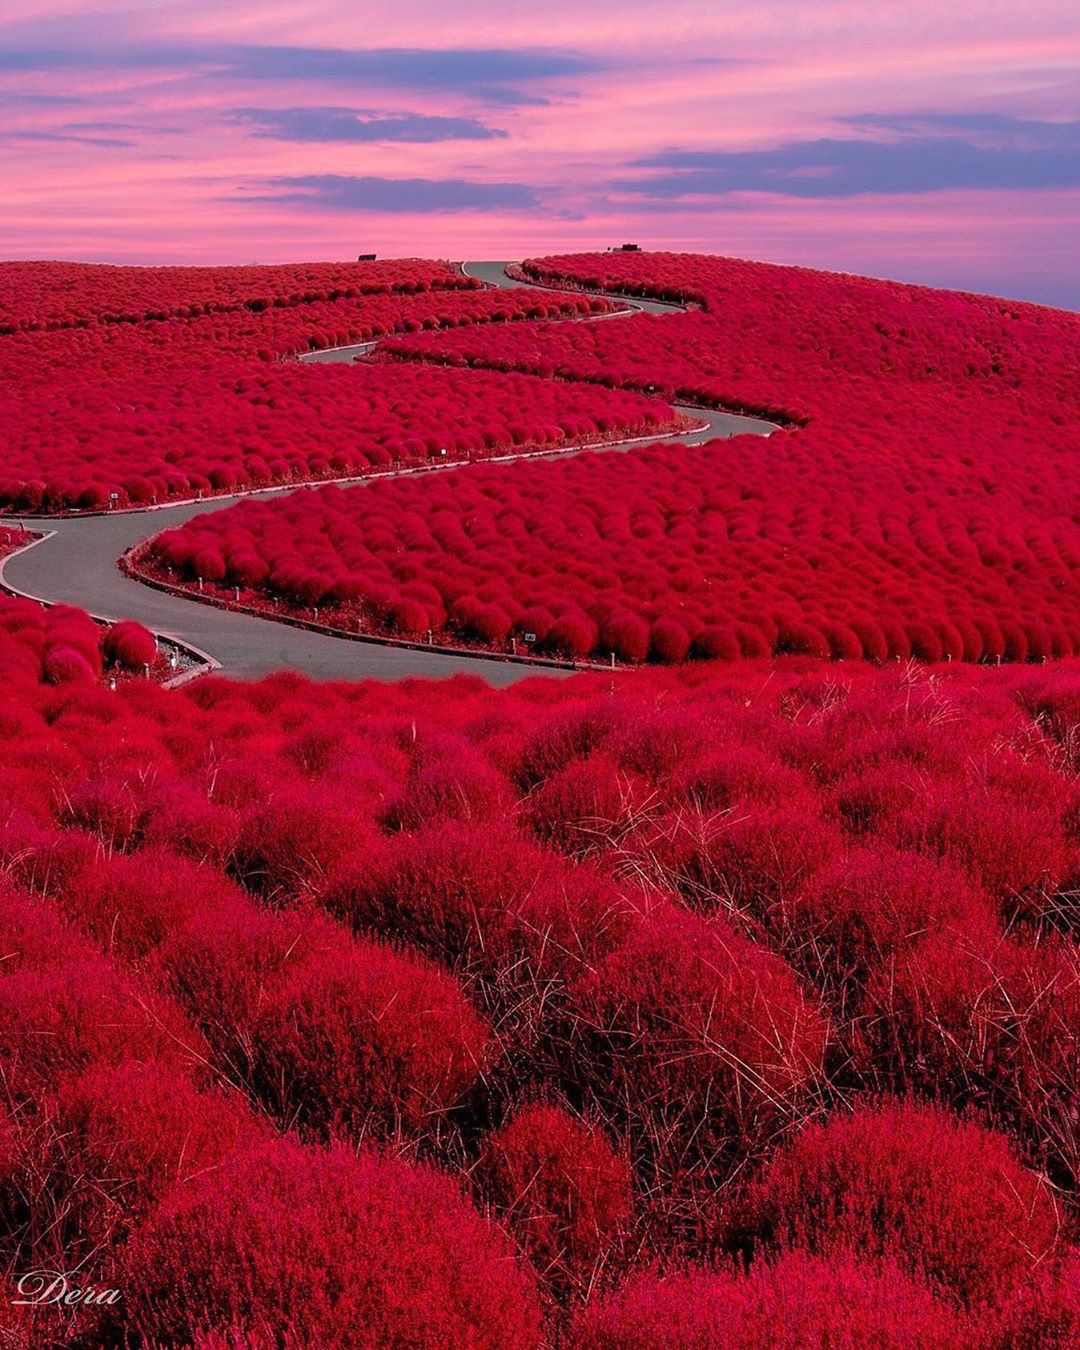 Đẹp nhất Nhật Bản mùa này chính là đồi cỏ Kochia đỏ rực, du khách đua nhau check-in đông không thấy lối đi - Ảnh 3.